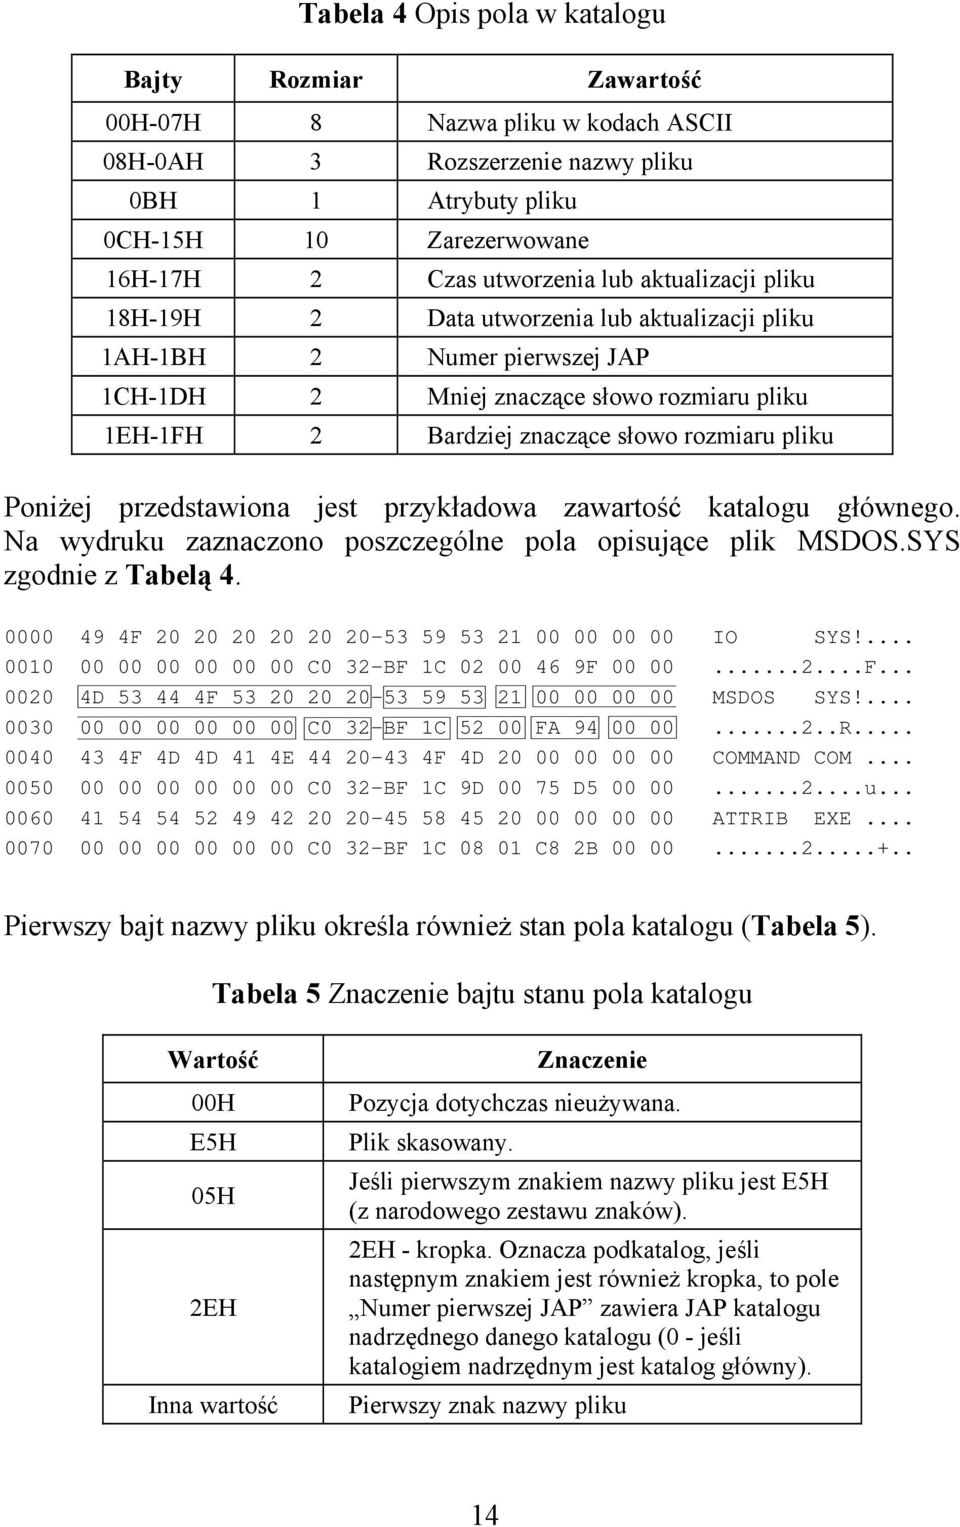 Poniżej przedstawiona jest przykładowa zawartość katalogu głównego. Na wydruku zaznaczono poszczególne pola opisujące plik MSDOS.SYS zgodnie z Tabelą 4.